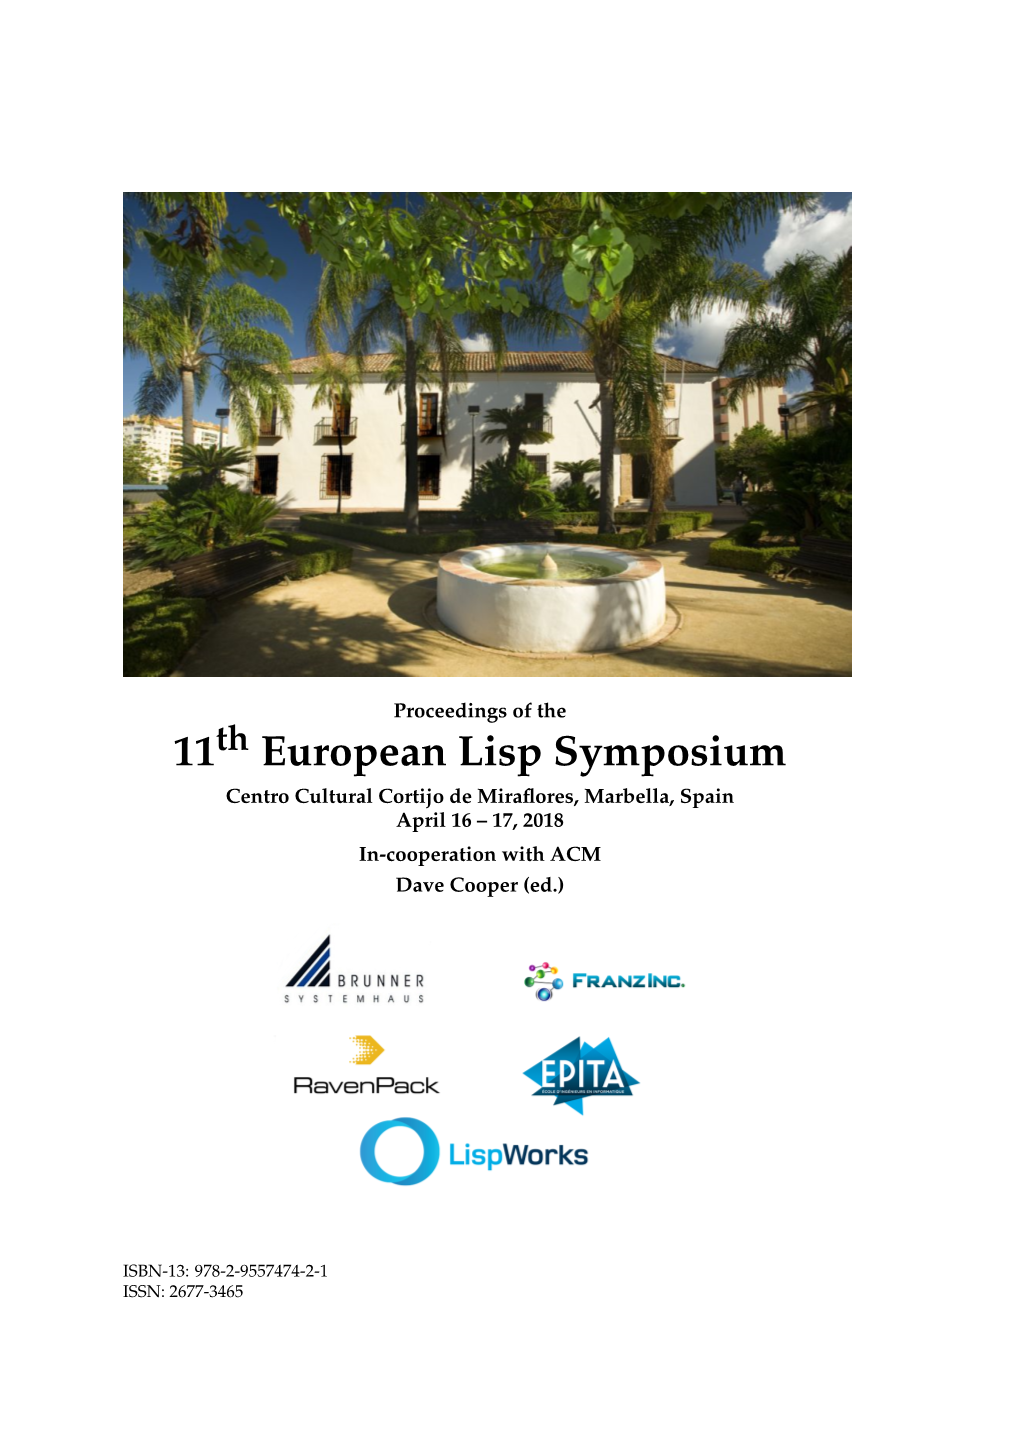 11 European Lisp Symposium